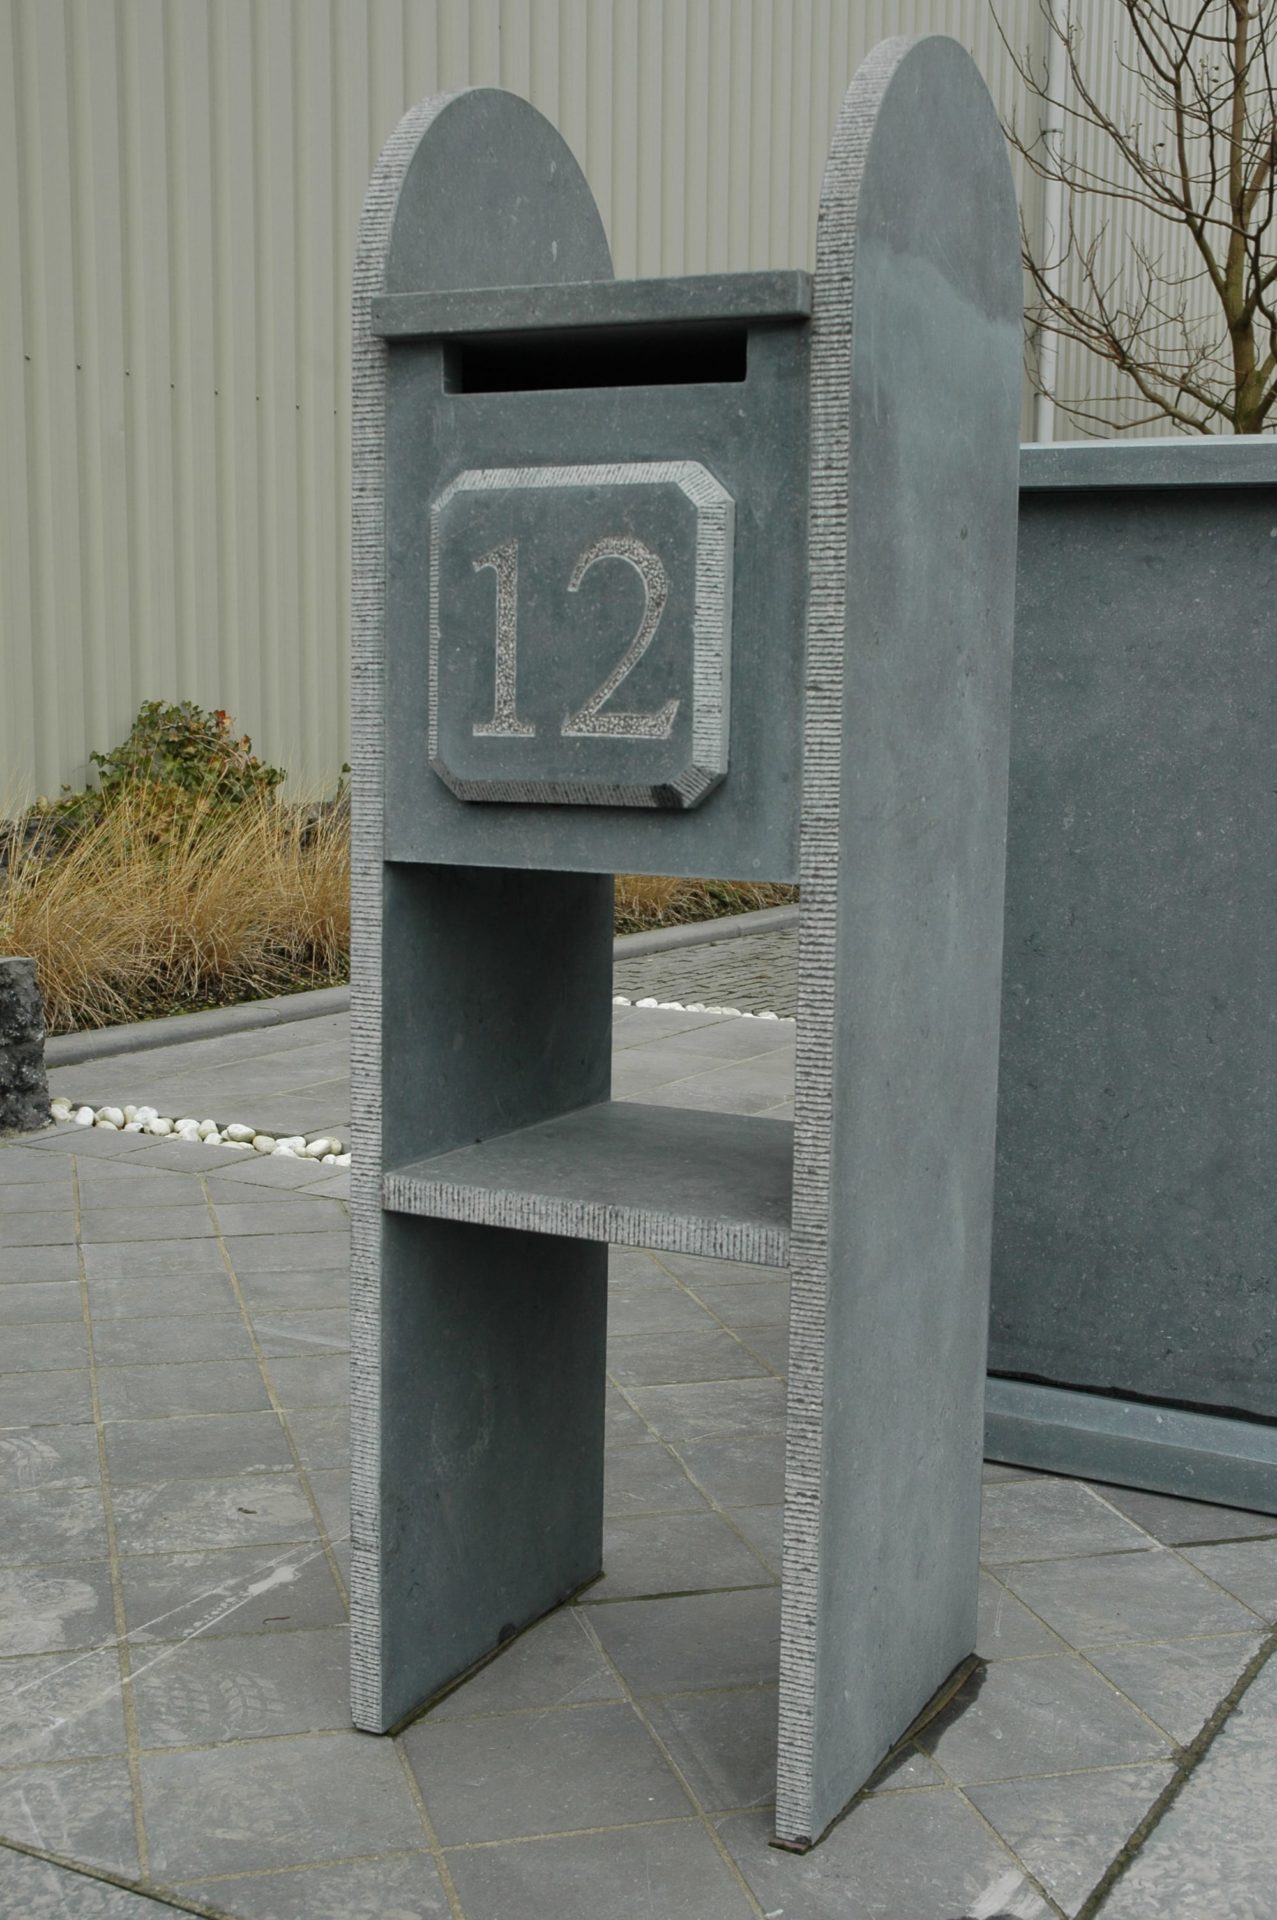 Belgian bluestone letterbox engraved numbers